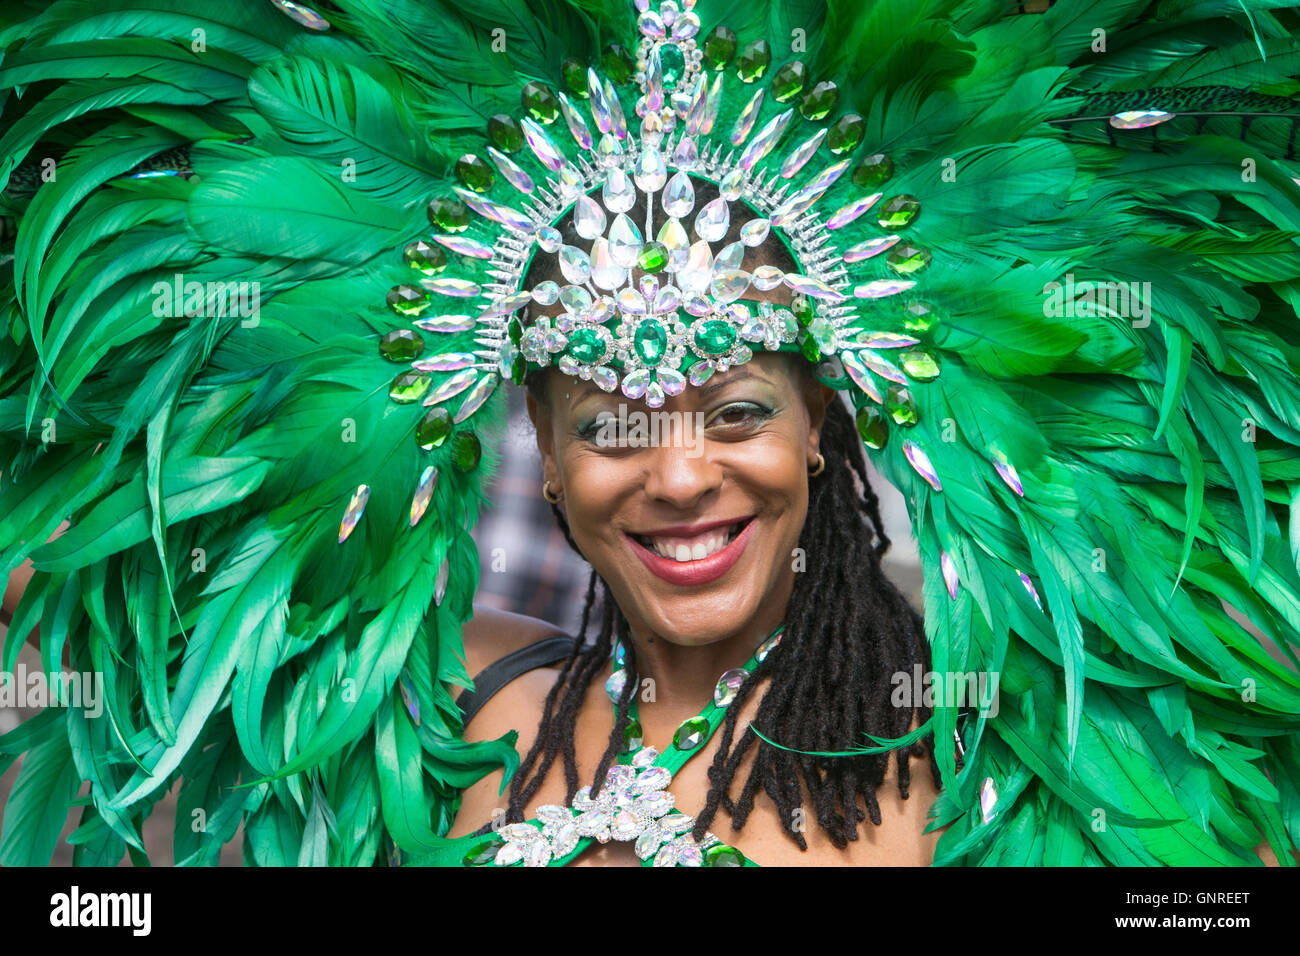 Ein Festival Performer im traditionellen Kostüm paradieren am Karneval von Notting Hill im Westen Londons Stockfoto